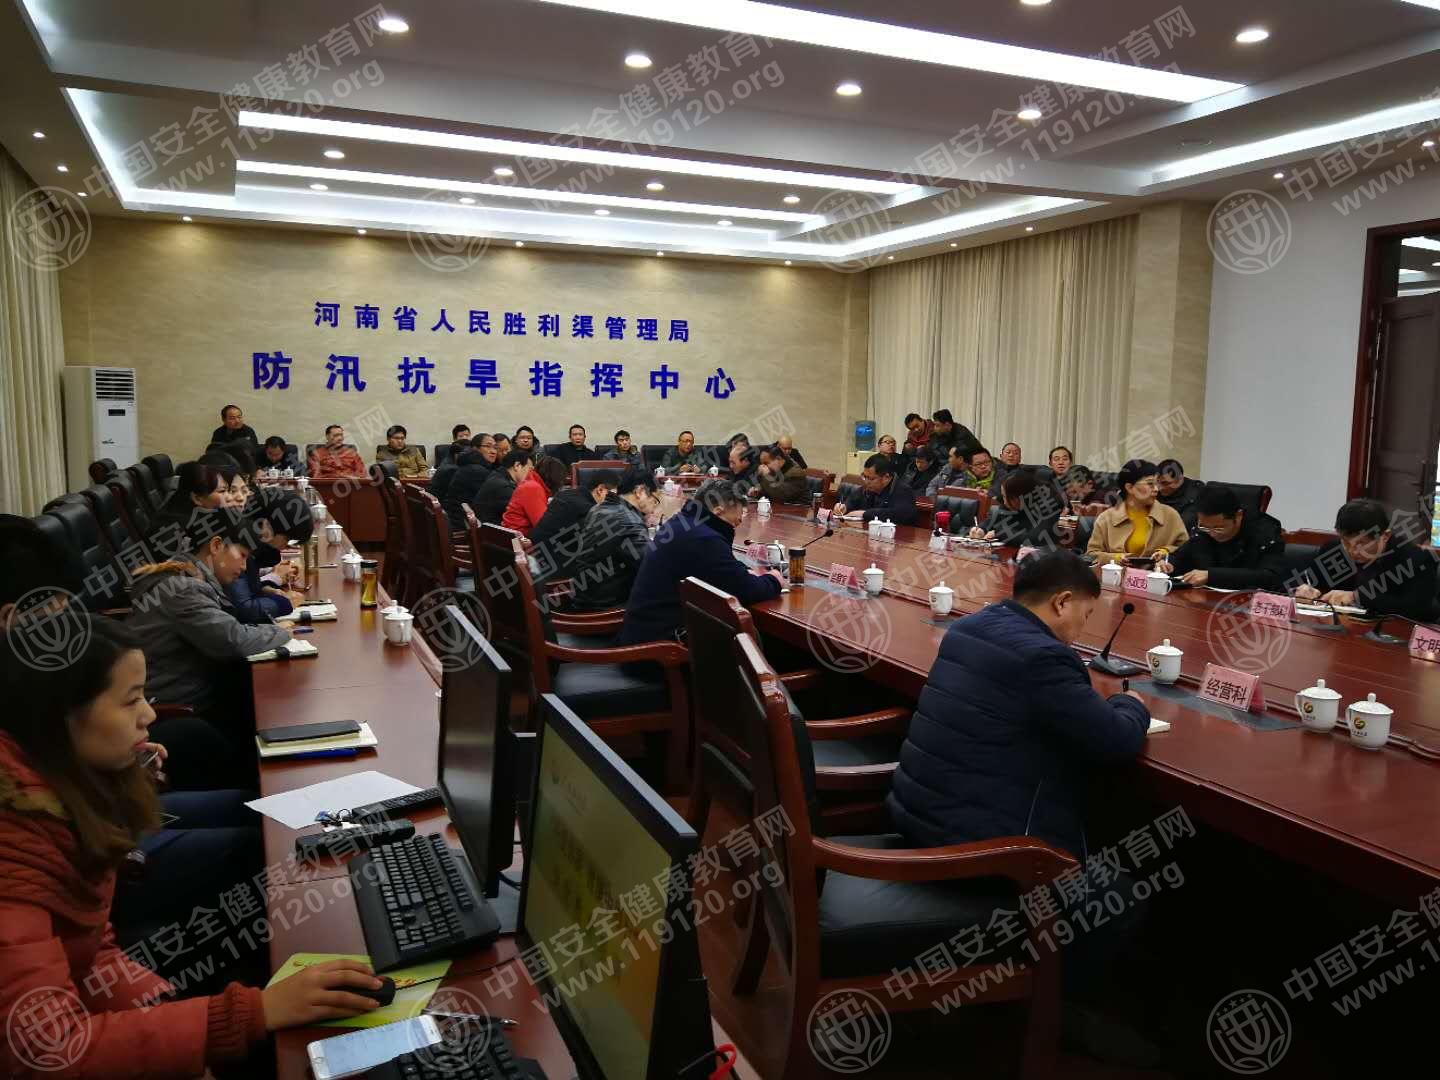 新乡河南省人民胜利渠管理局开展健康教育知识讲座